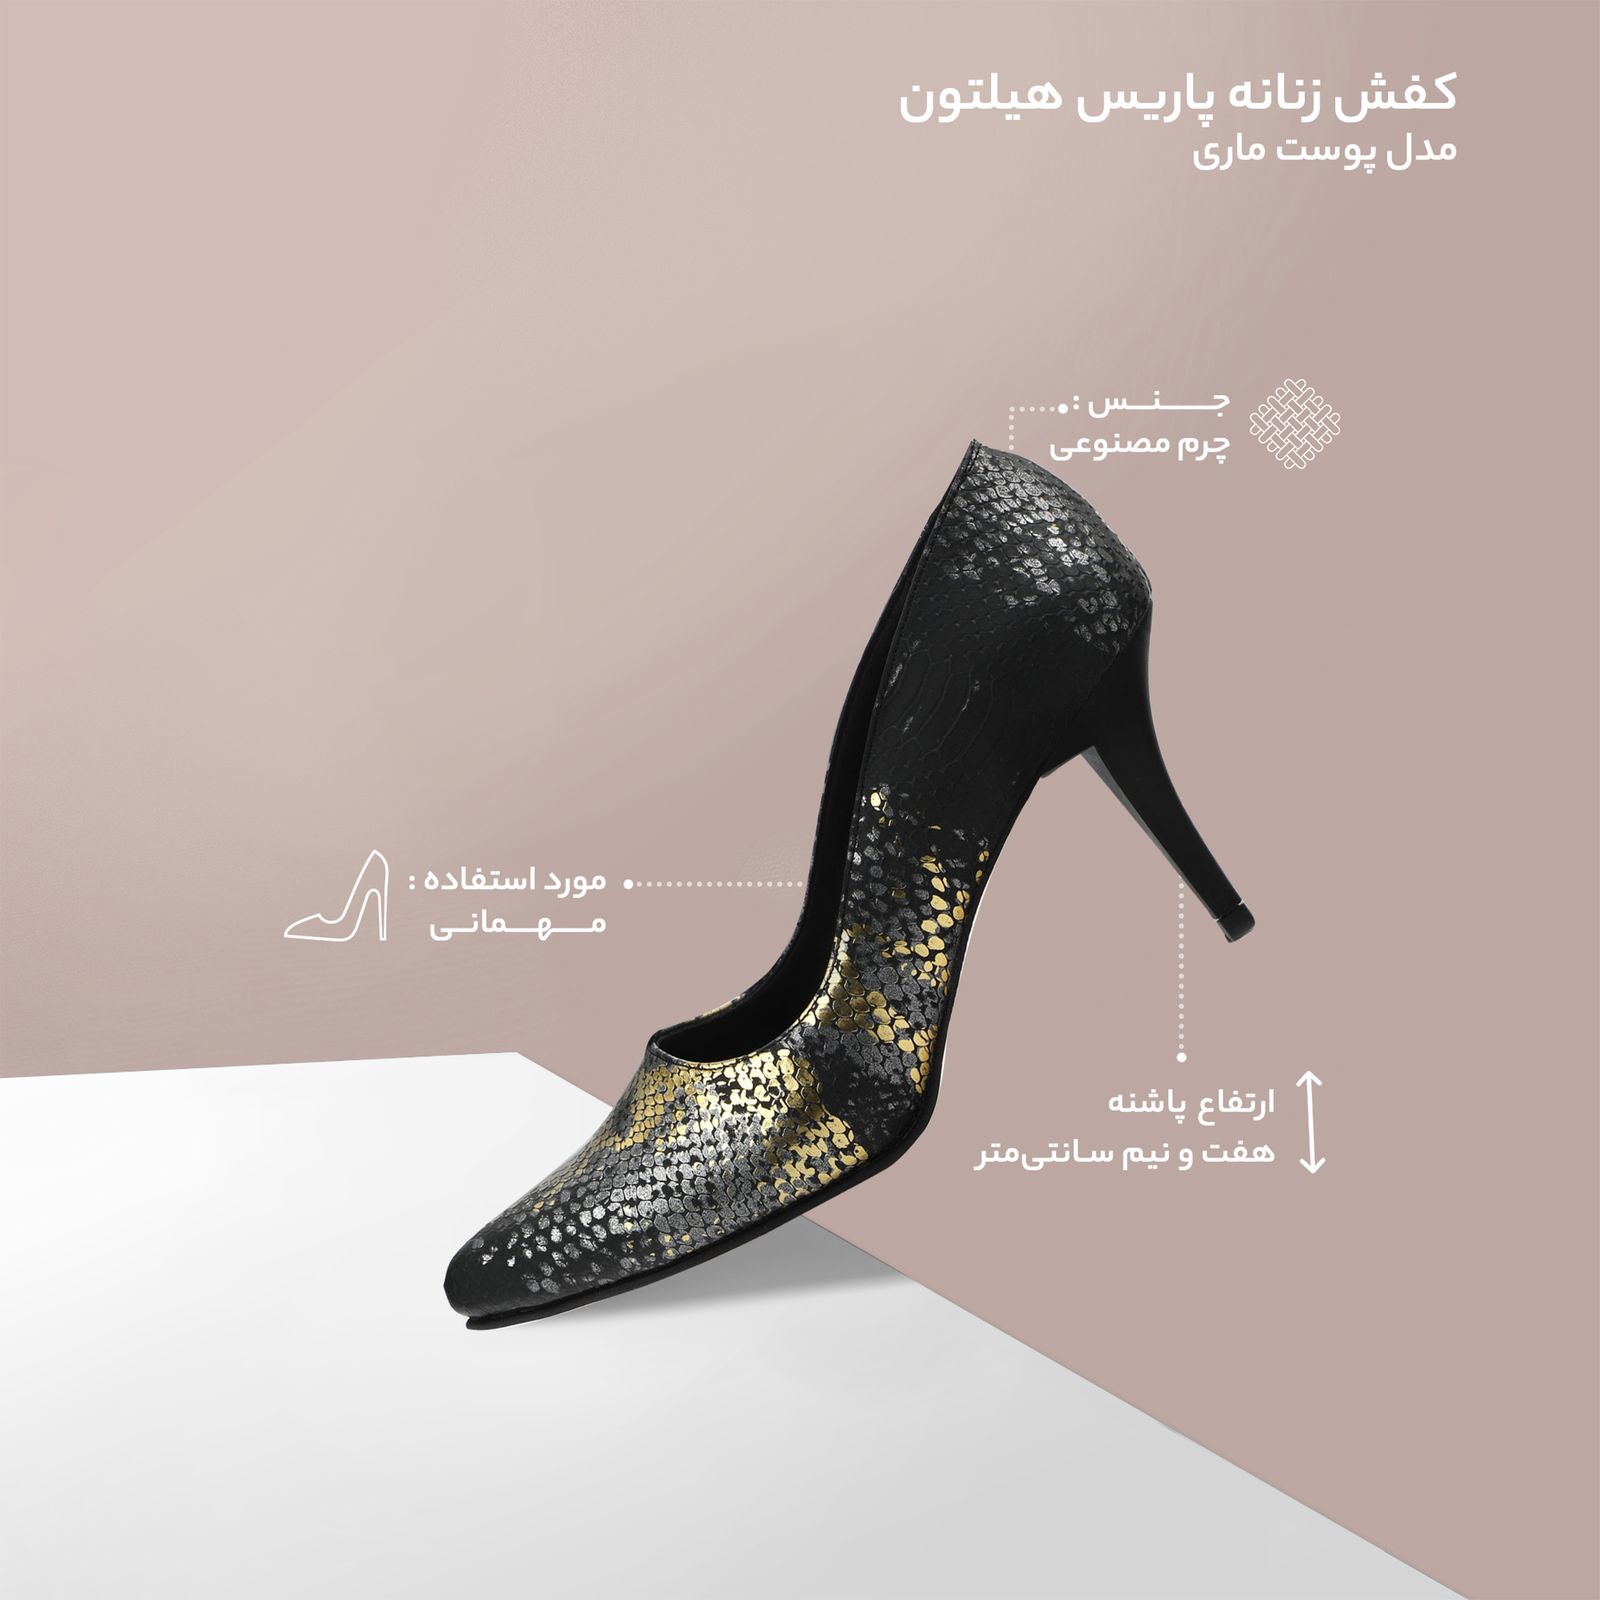 کفش زنانه پاریس هیلتون مدل پوست ماری کد psw20681 رنگ طلایی -  - 8